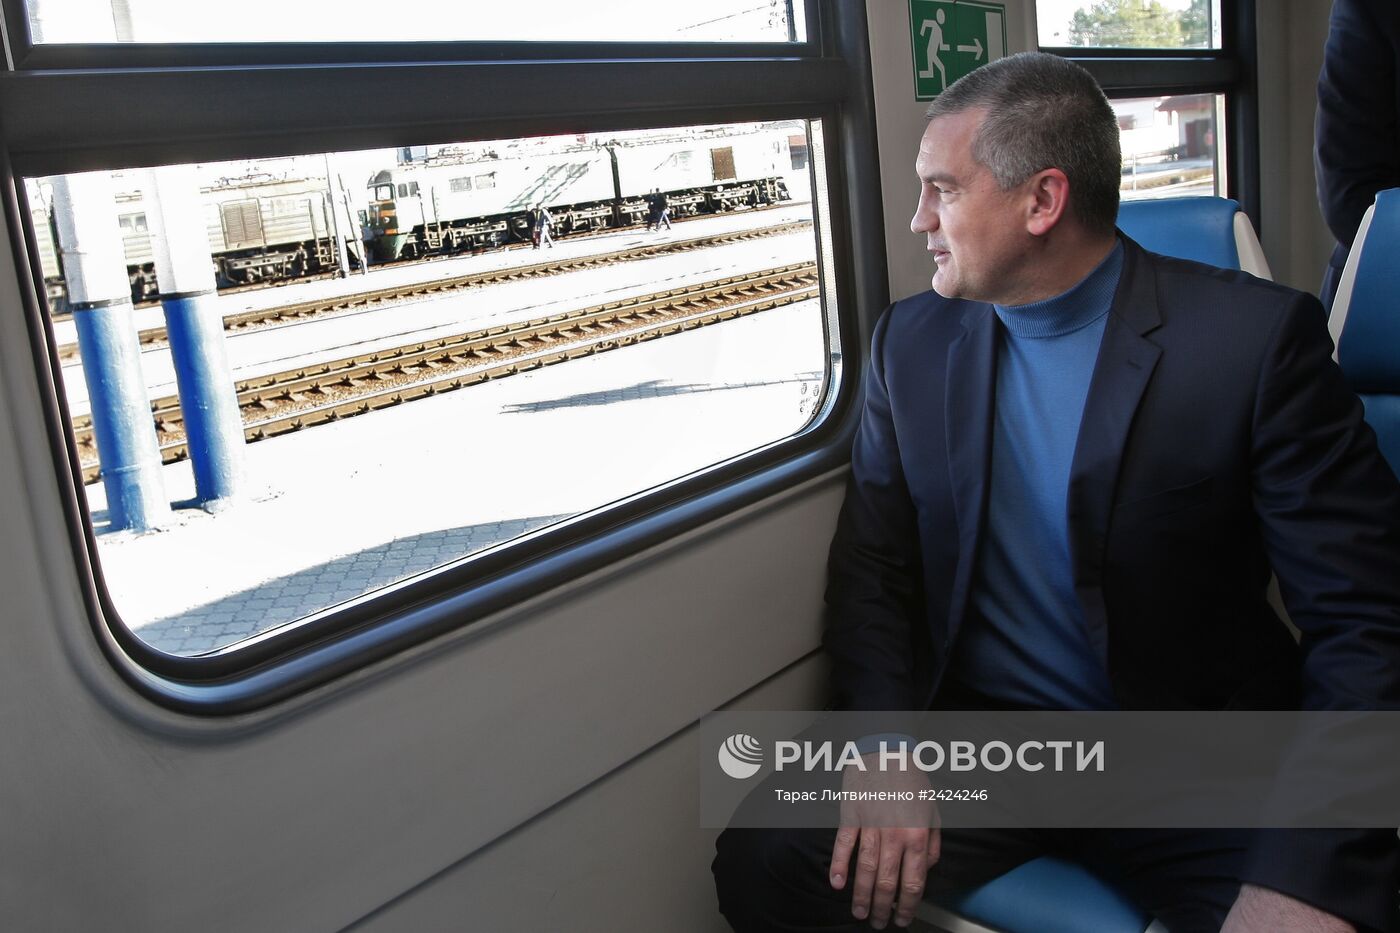 Крымской железной дороге передан новый электропоезд железнодорожниками России